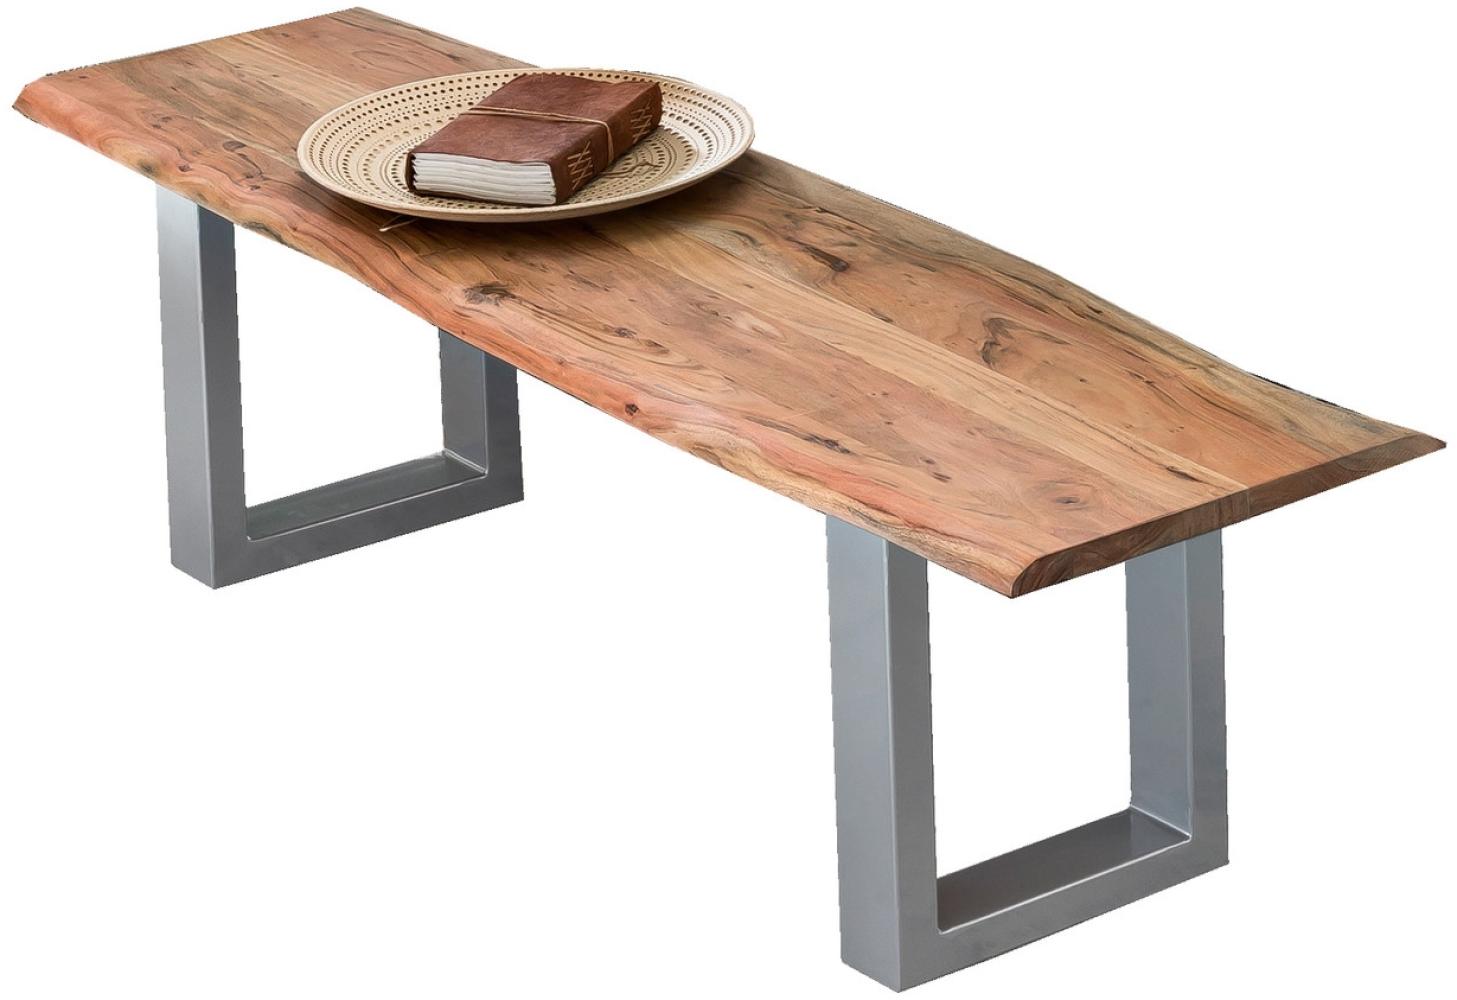 Sit Möbel 'Tische & Bänke' Bank 150 cm | Gestell silbern, Platte Natur lackiert und gewachst Bild 1